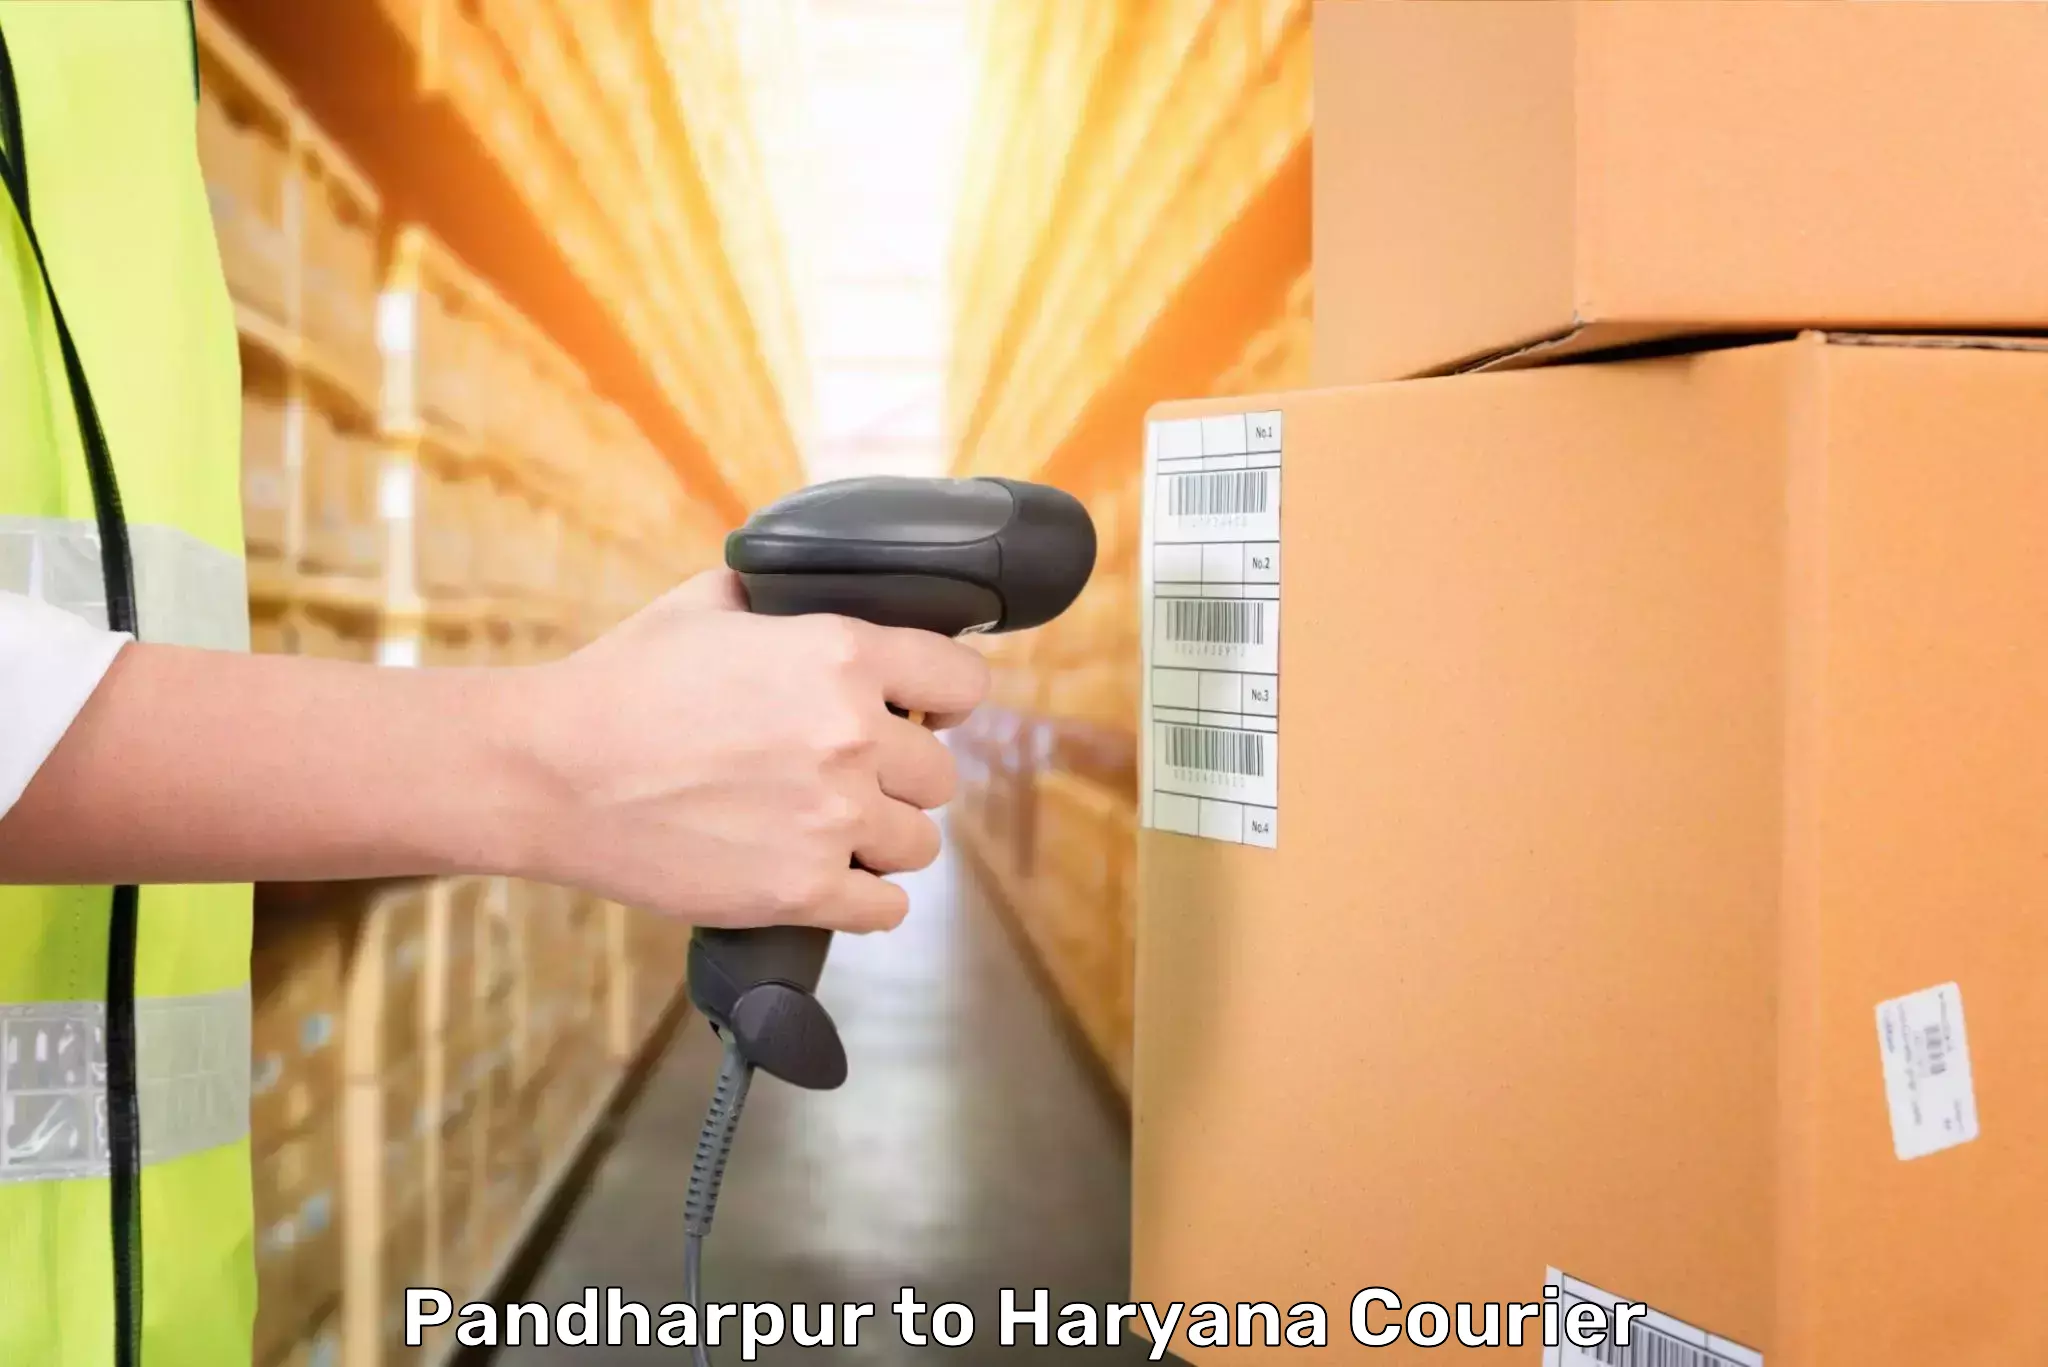 Baggage shipping calculator Pandharpur to Chaudhary Charan Singh Haryana Agricultural University Hisar